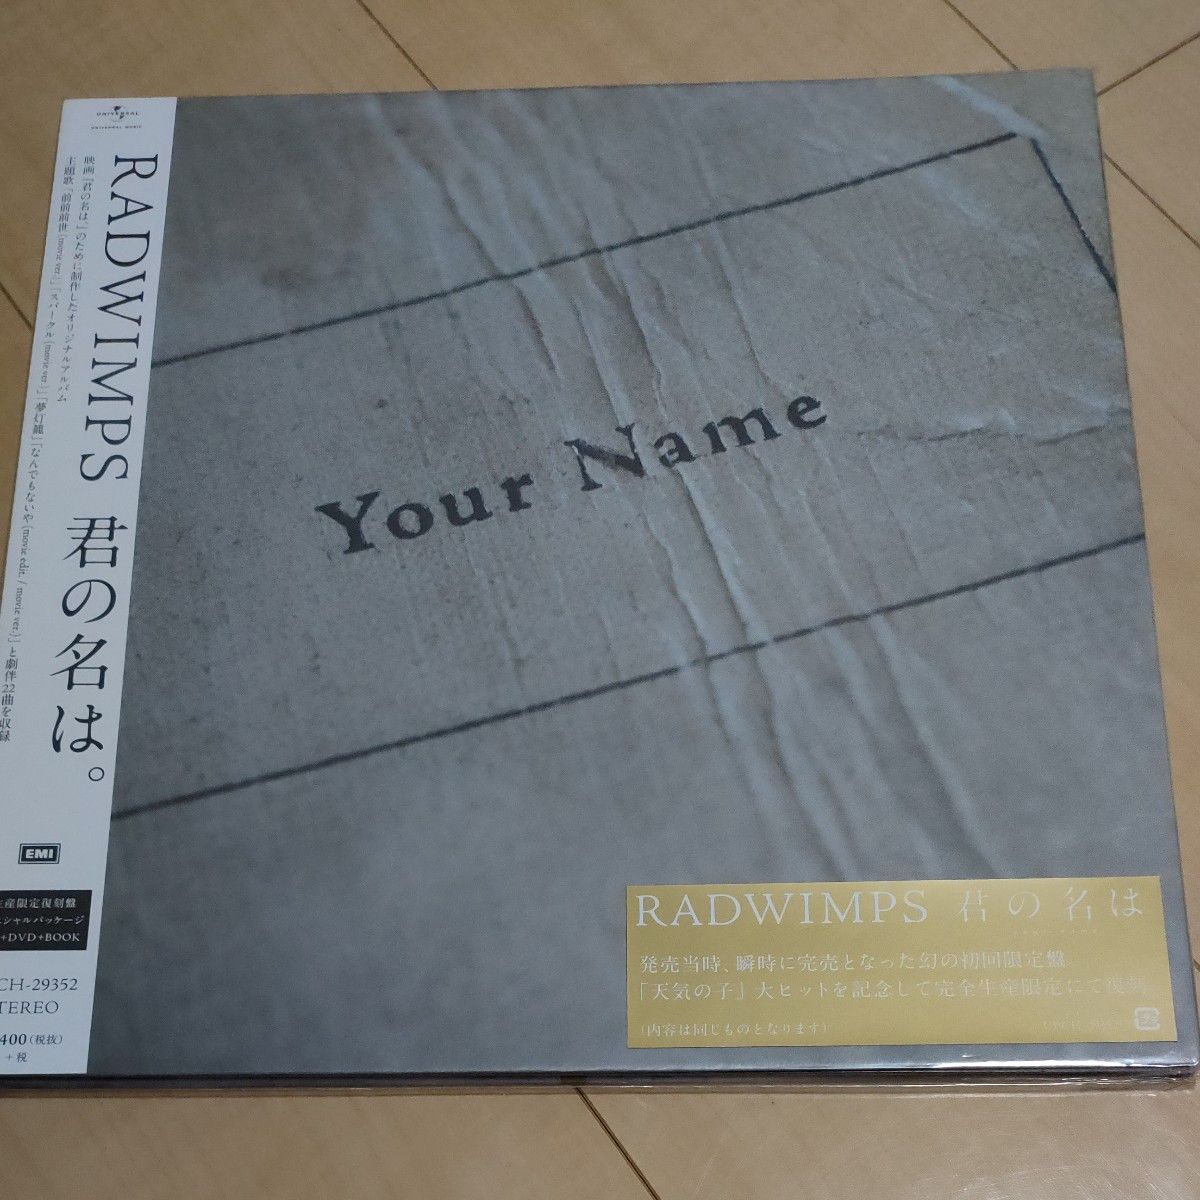 【新品未開封品】初回限定盤 (アンコールプレス) (取） RADWIMPS CD+DVD+BOOK/君の名は。…